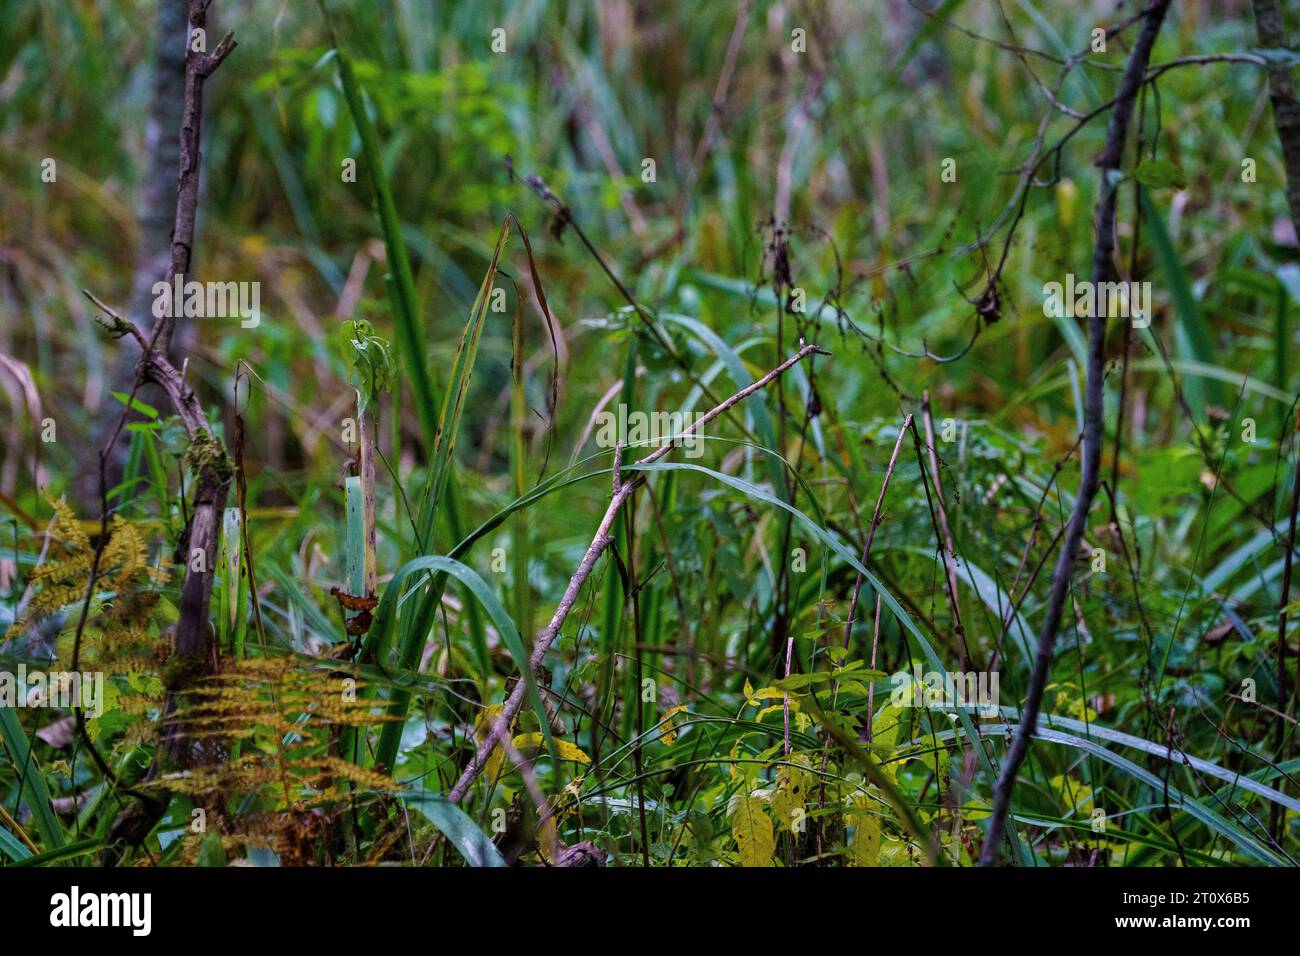 Dunkle moodie herbstfarbene Laubabstrakte in natürlichen Texturen Stockfoto